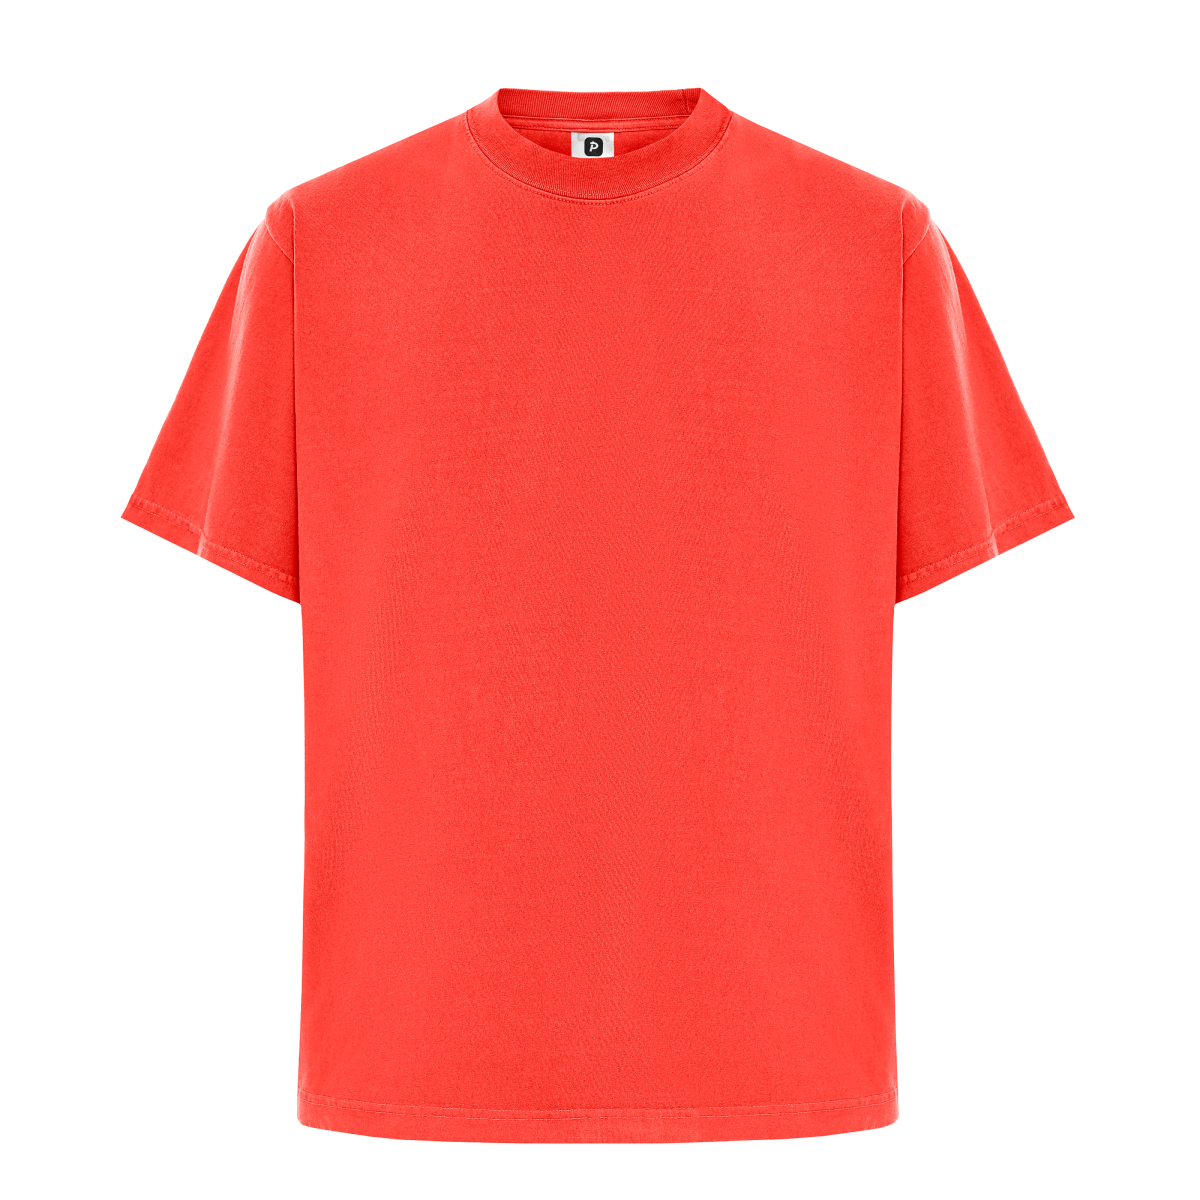 Garment Dye T-Shirt - Standard Size - Cherry Tomato